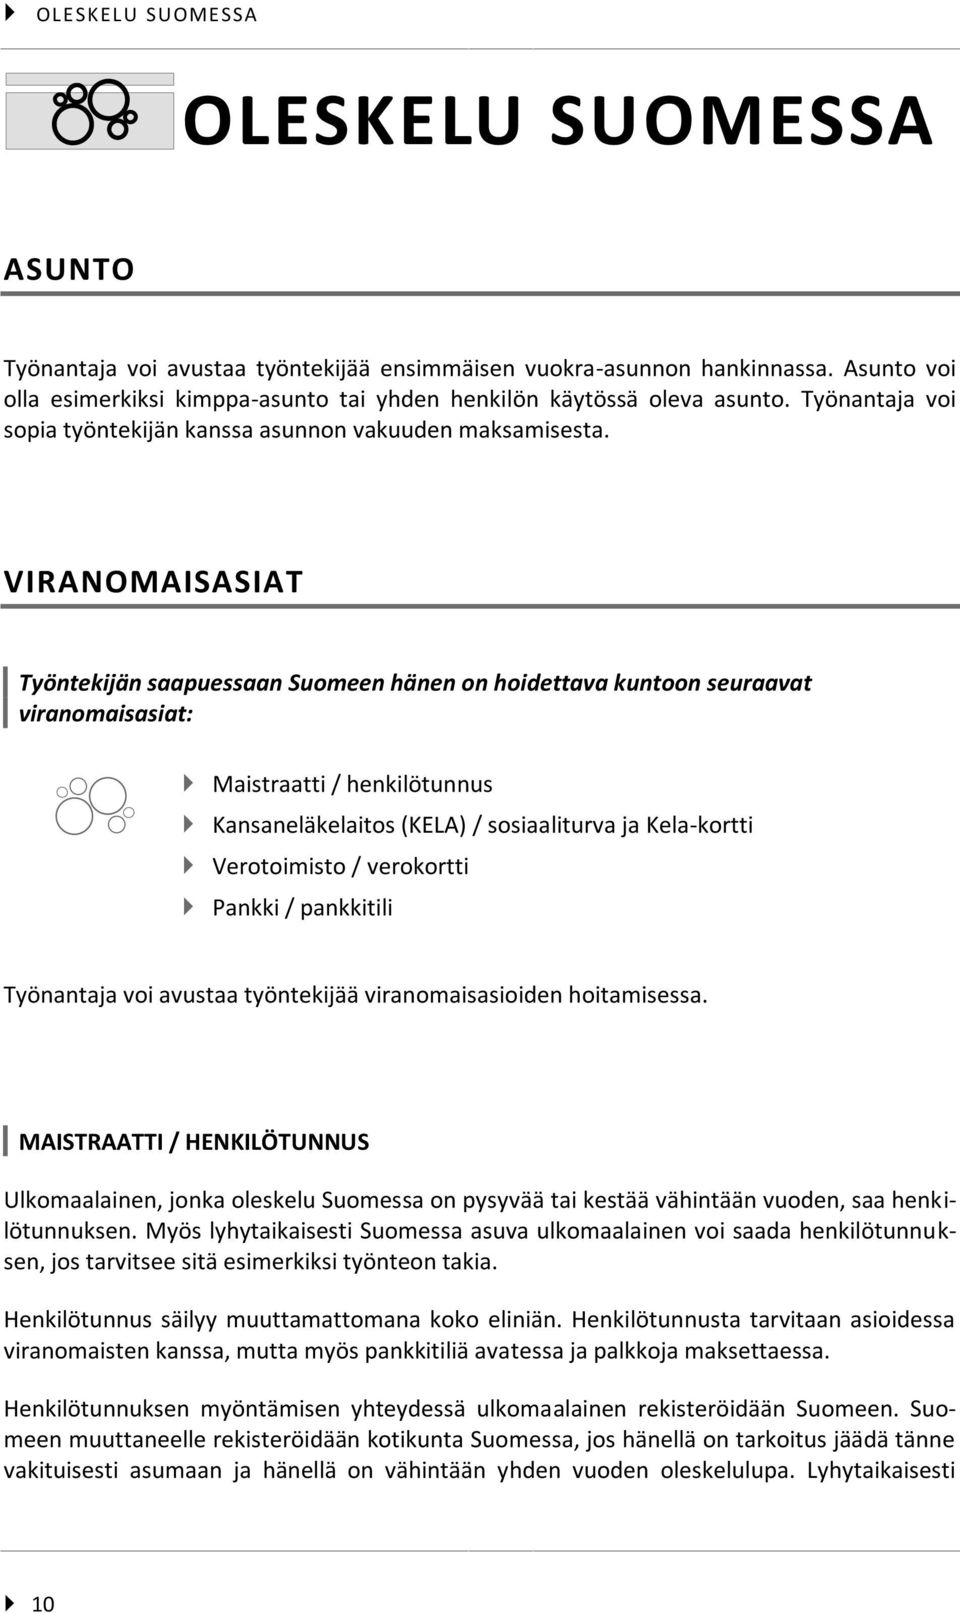 VIRANOMAISASIAT Työntekijän saapuessaan Suomeen hänen on hoidettava kuntoon seuraavat viranomaisasiat: Maistraatti / henkilötunnus Kansaneläkelaitos (KELA) / sosiaaliturva ja Kela-kortti Verotoimisto